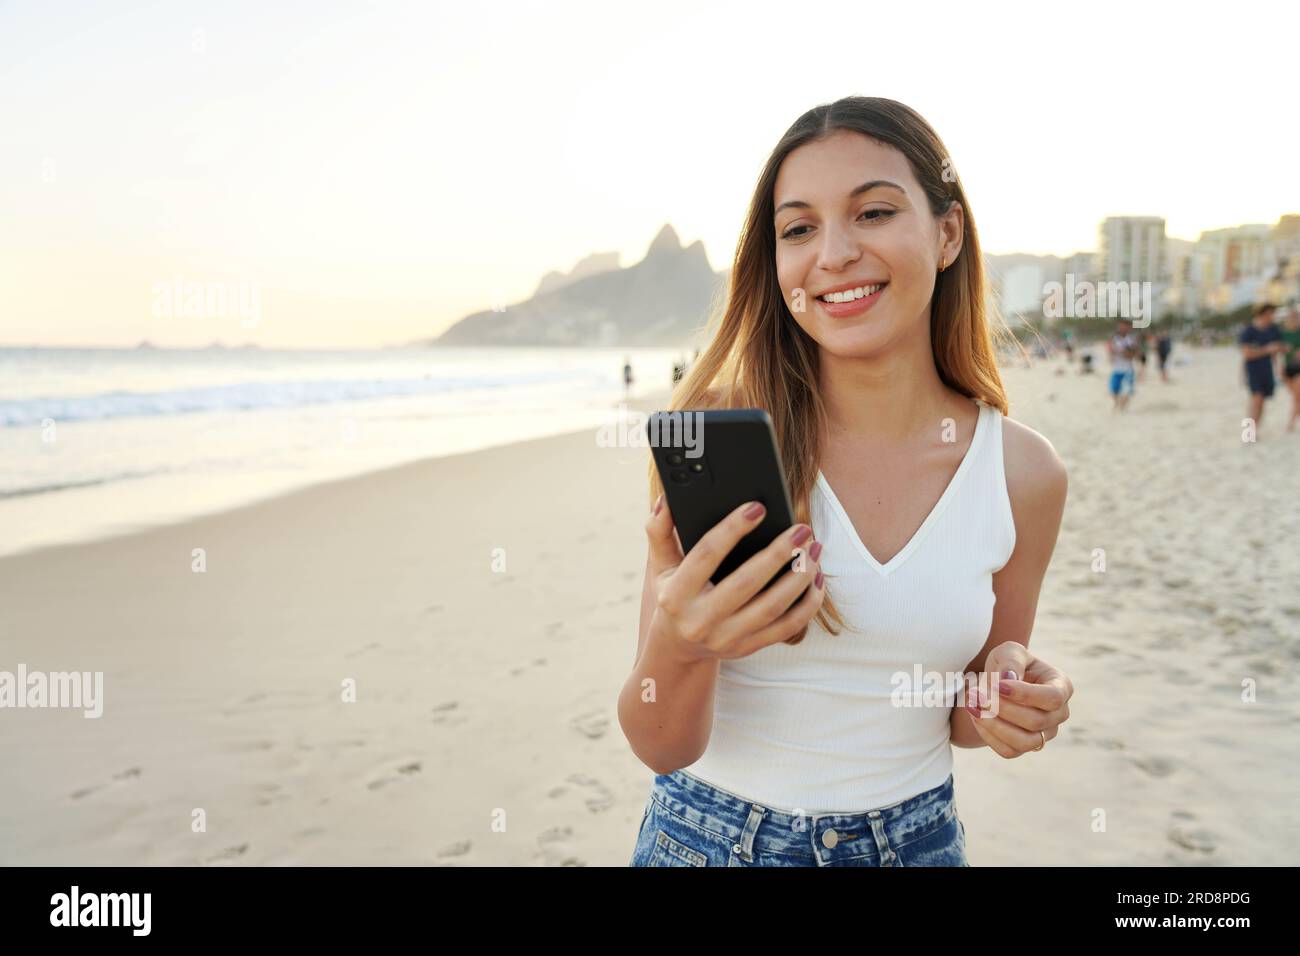 Ritratto di una giovane donna brasiliana sorridente sulla spiaggia di Ipanema che tiene in mano e guarda il suo smartphone, Rio de Janeiro, Brasile Foto Stock